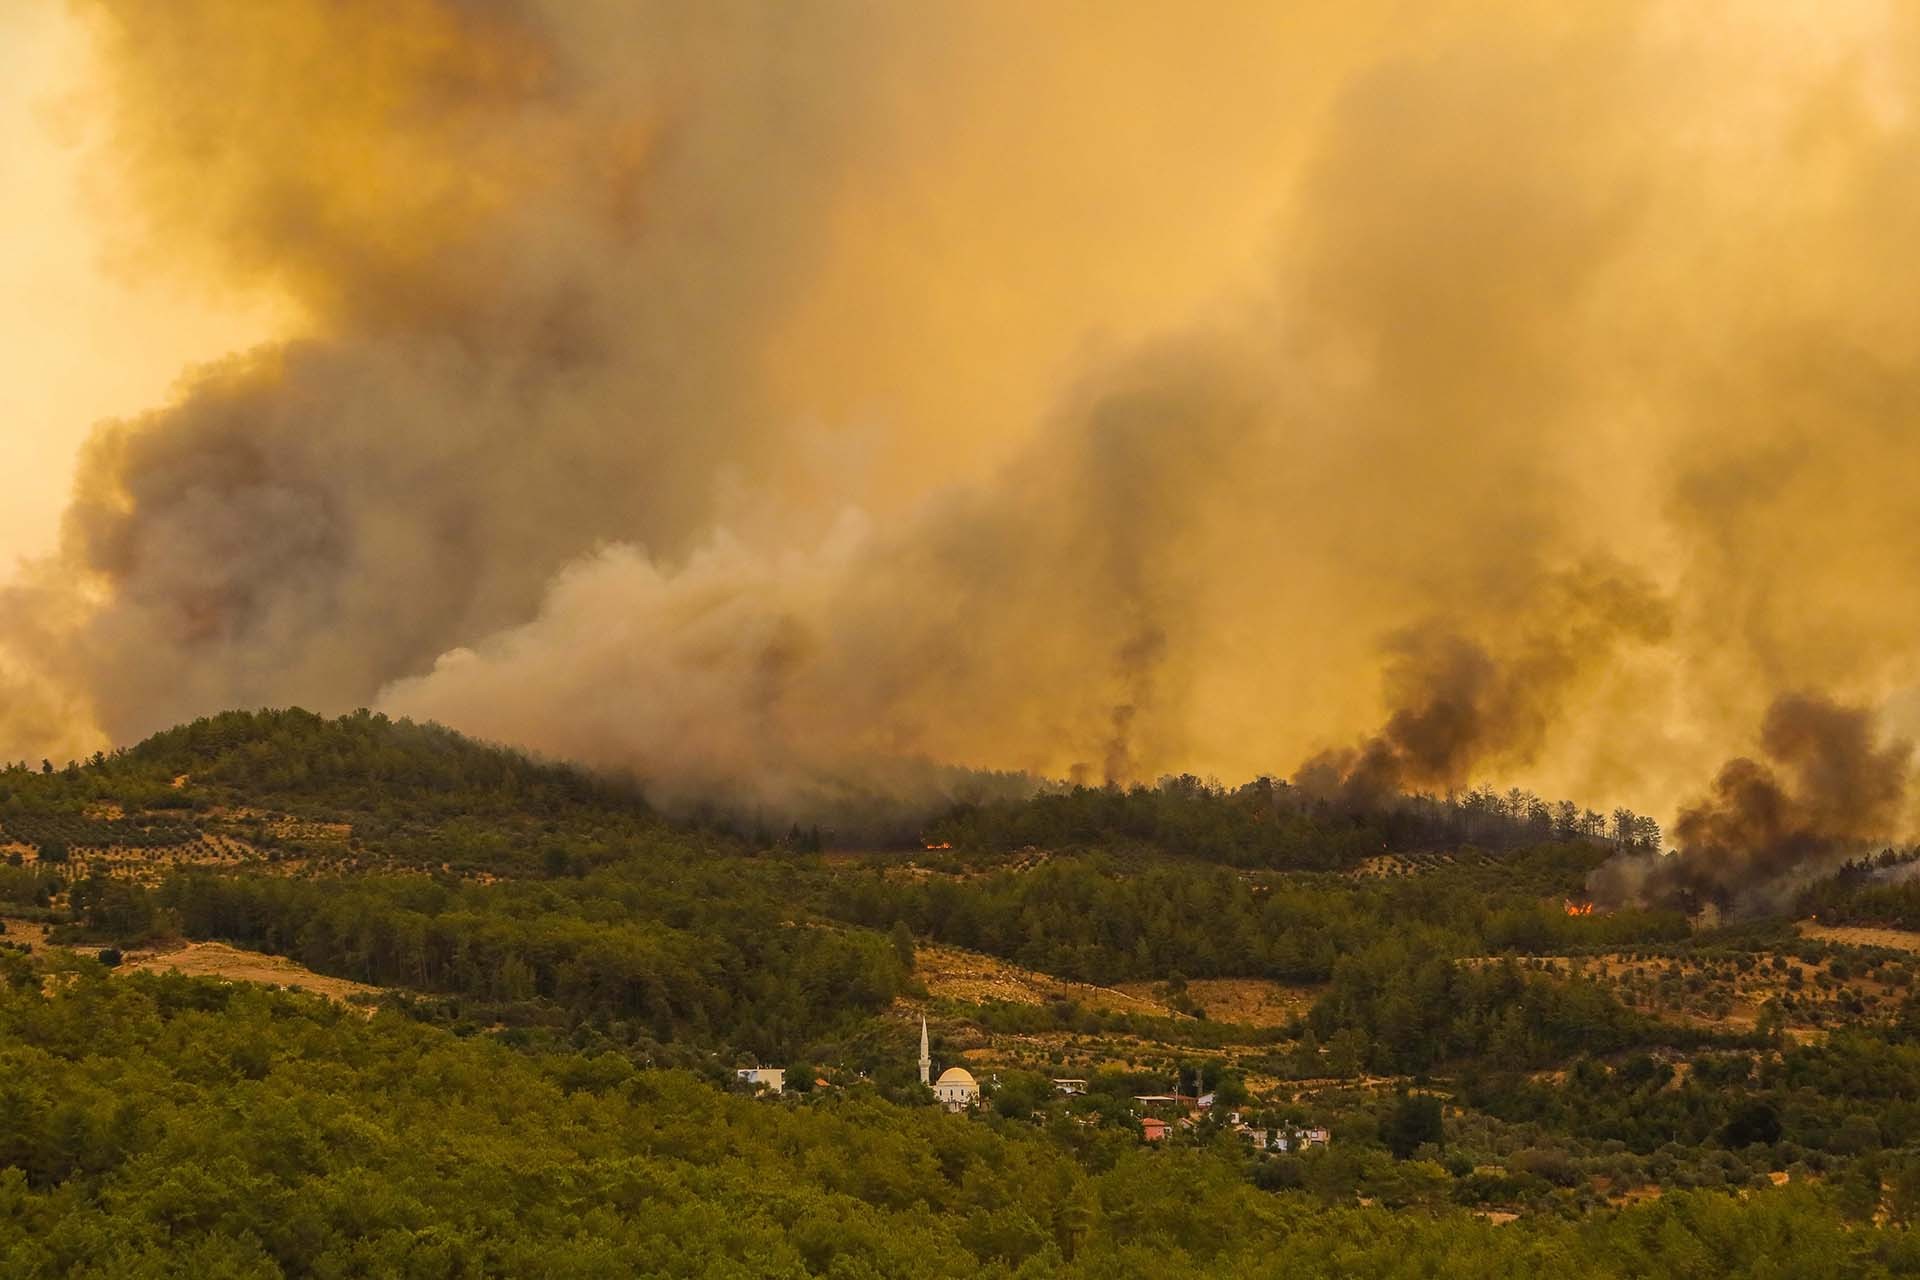 Manavgat'ta orman yangını 